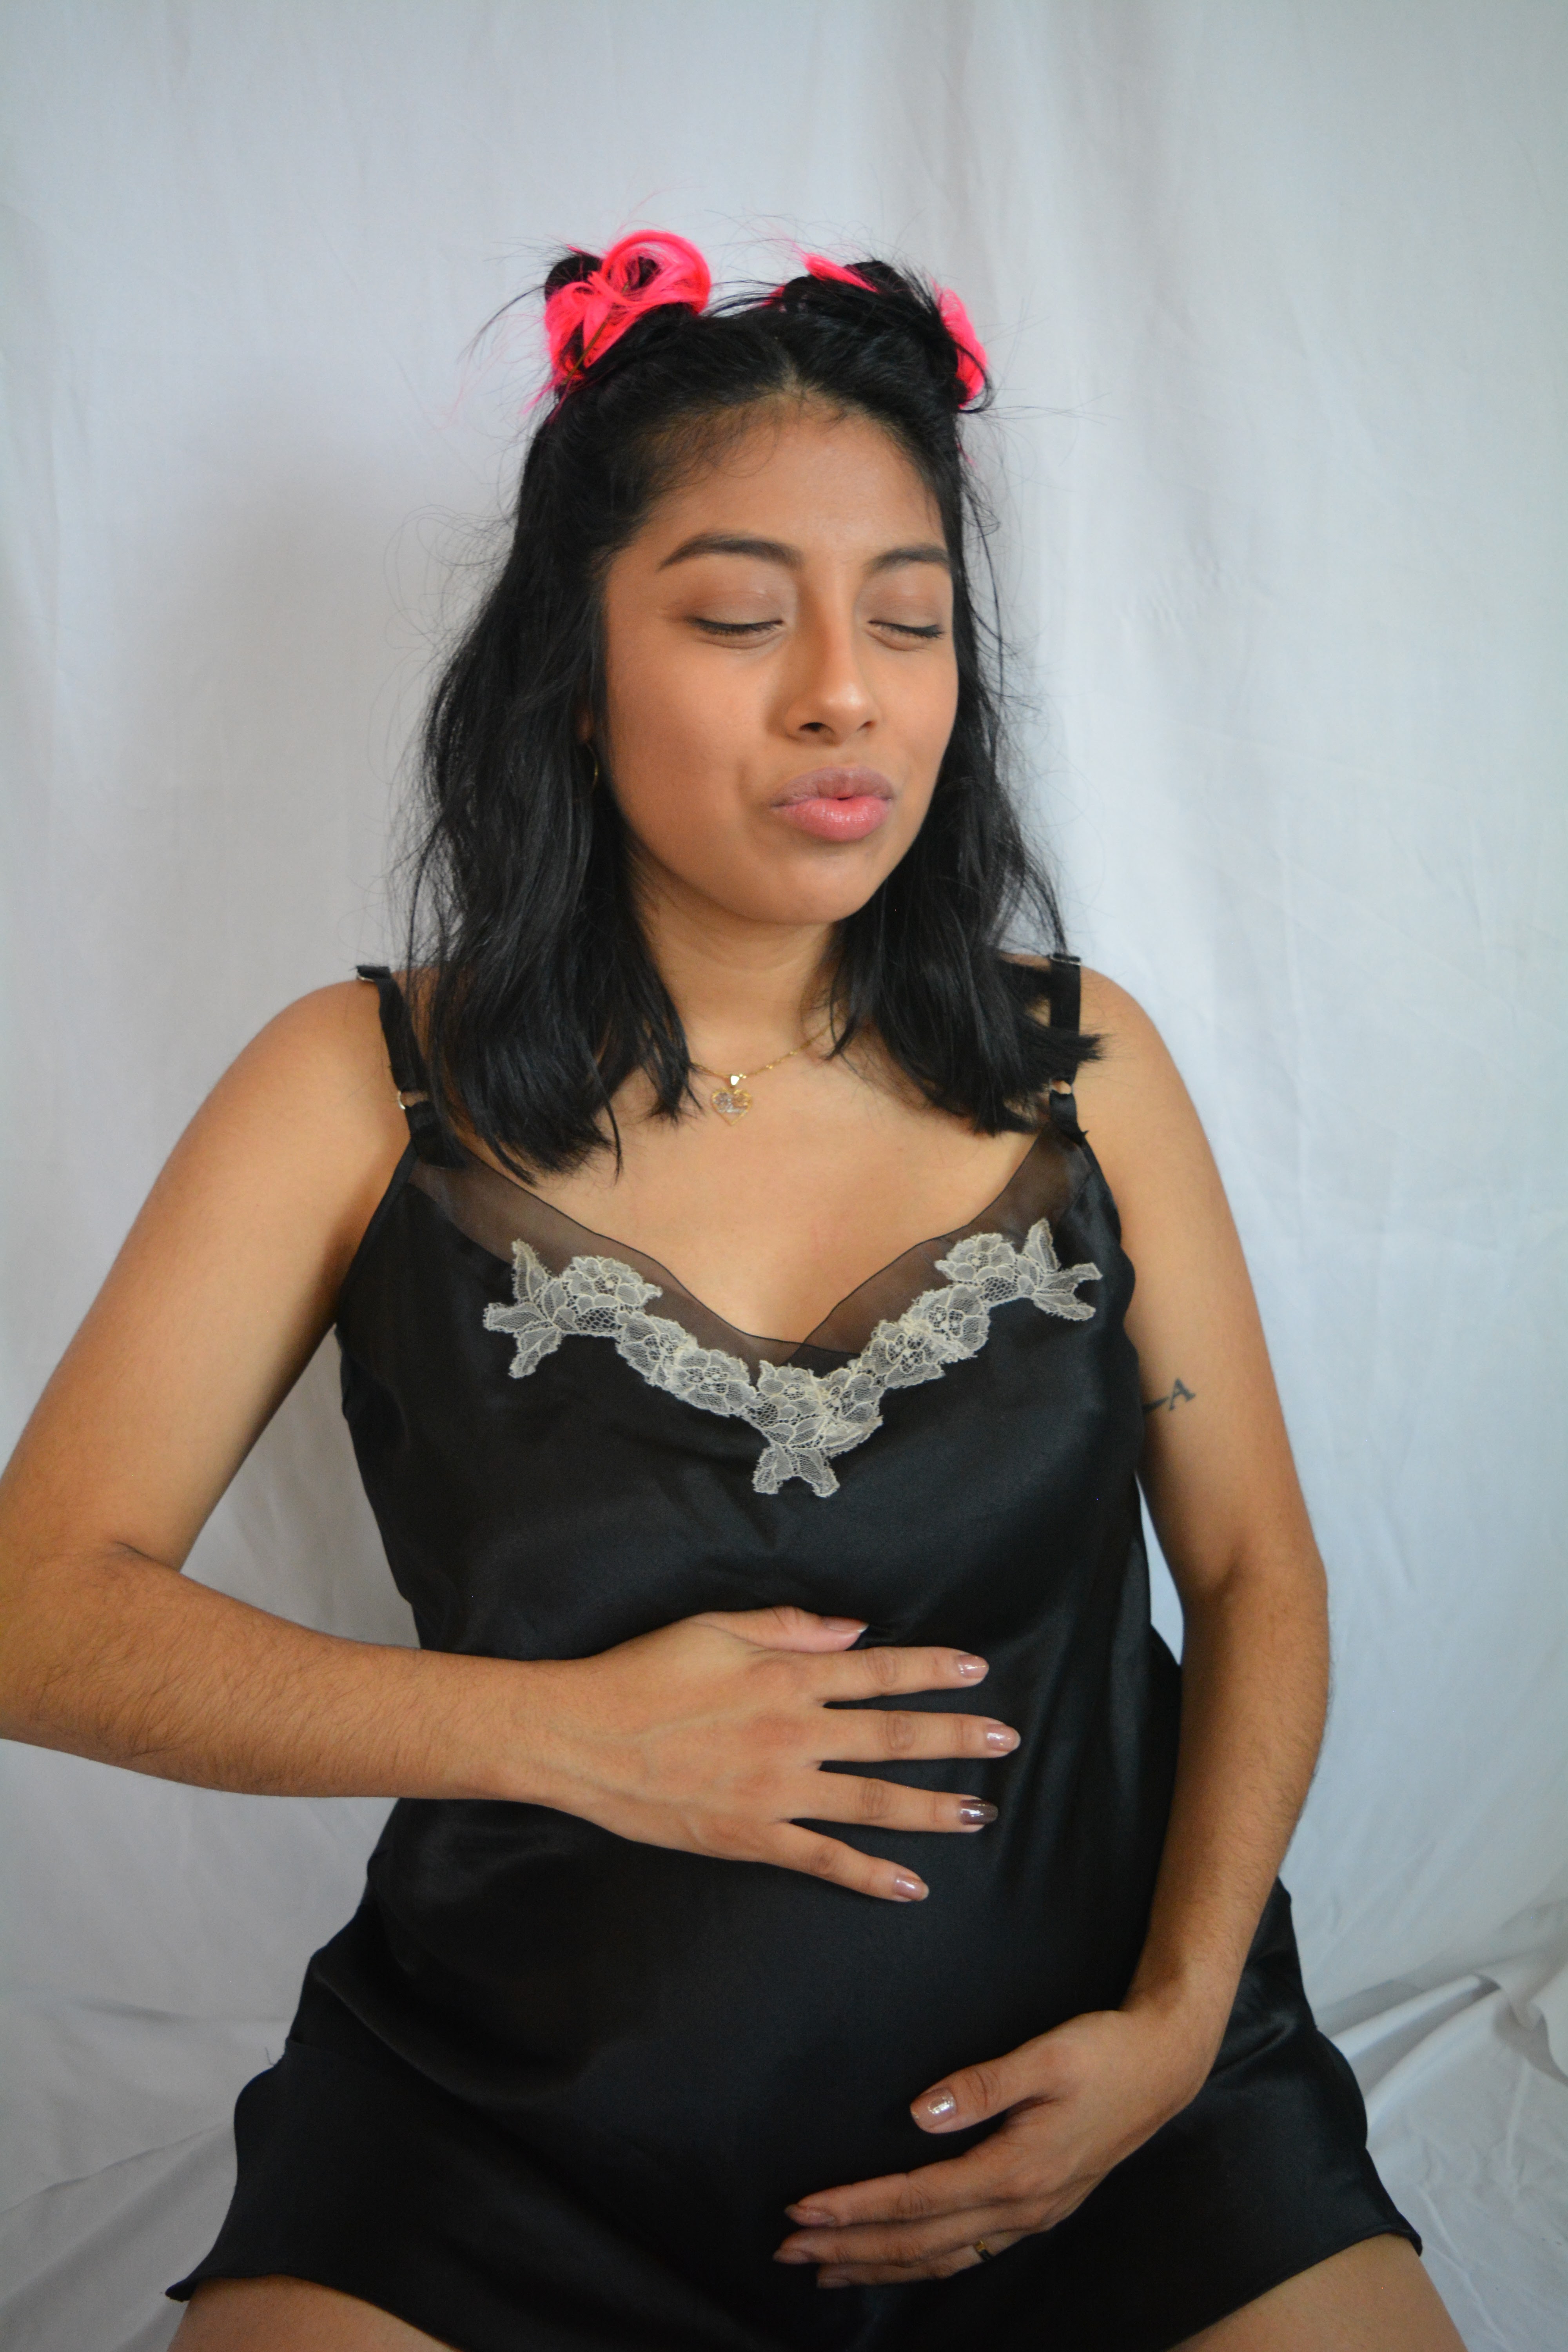 Maternity Photo Shoot Ideas: The Slip Dress Photo Shoot